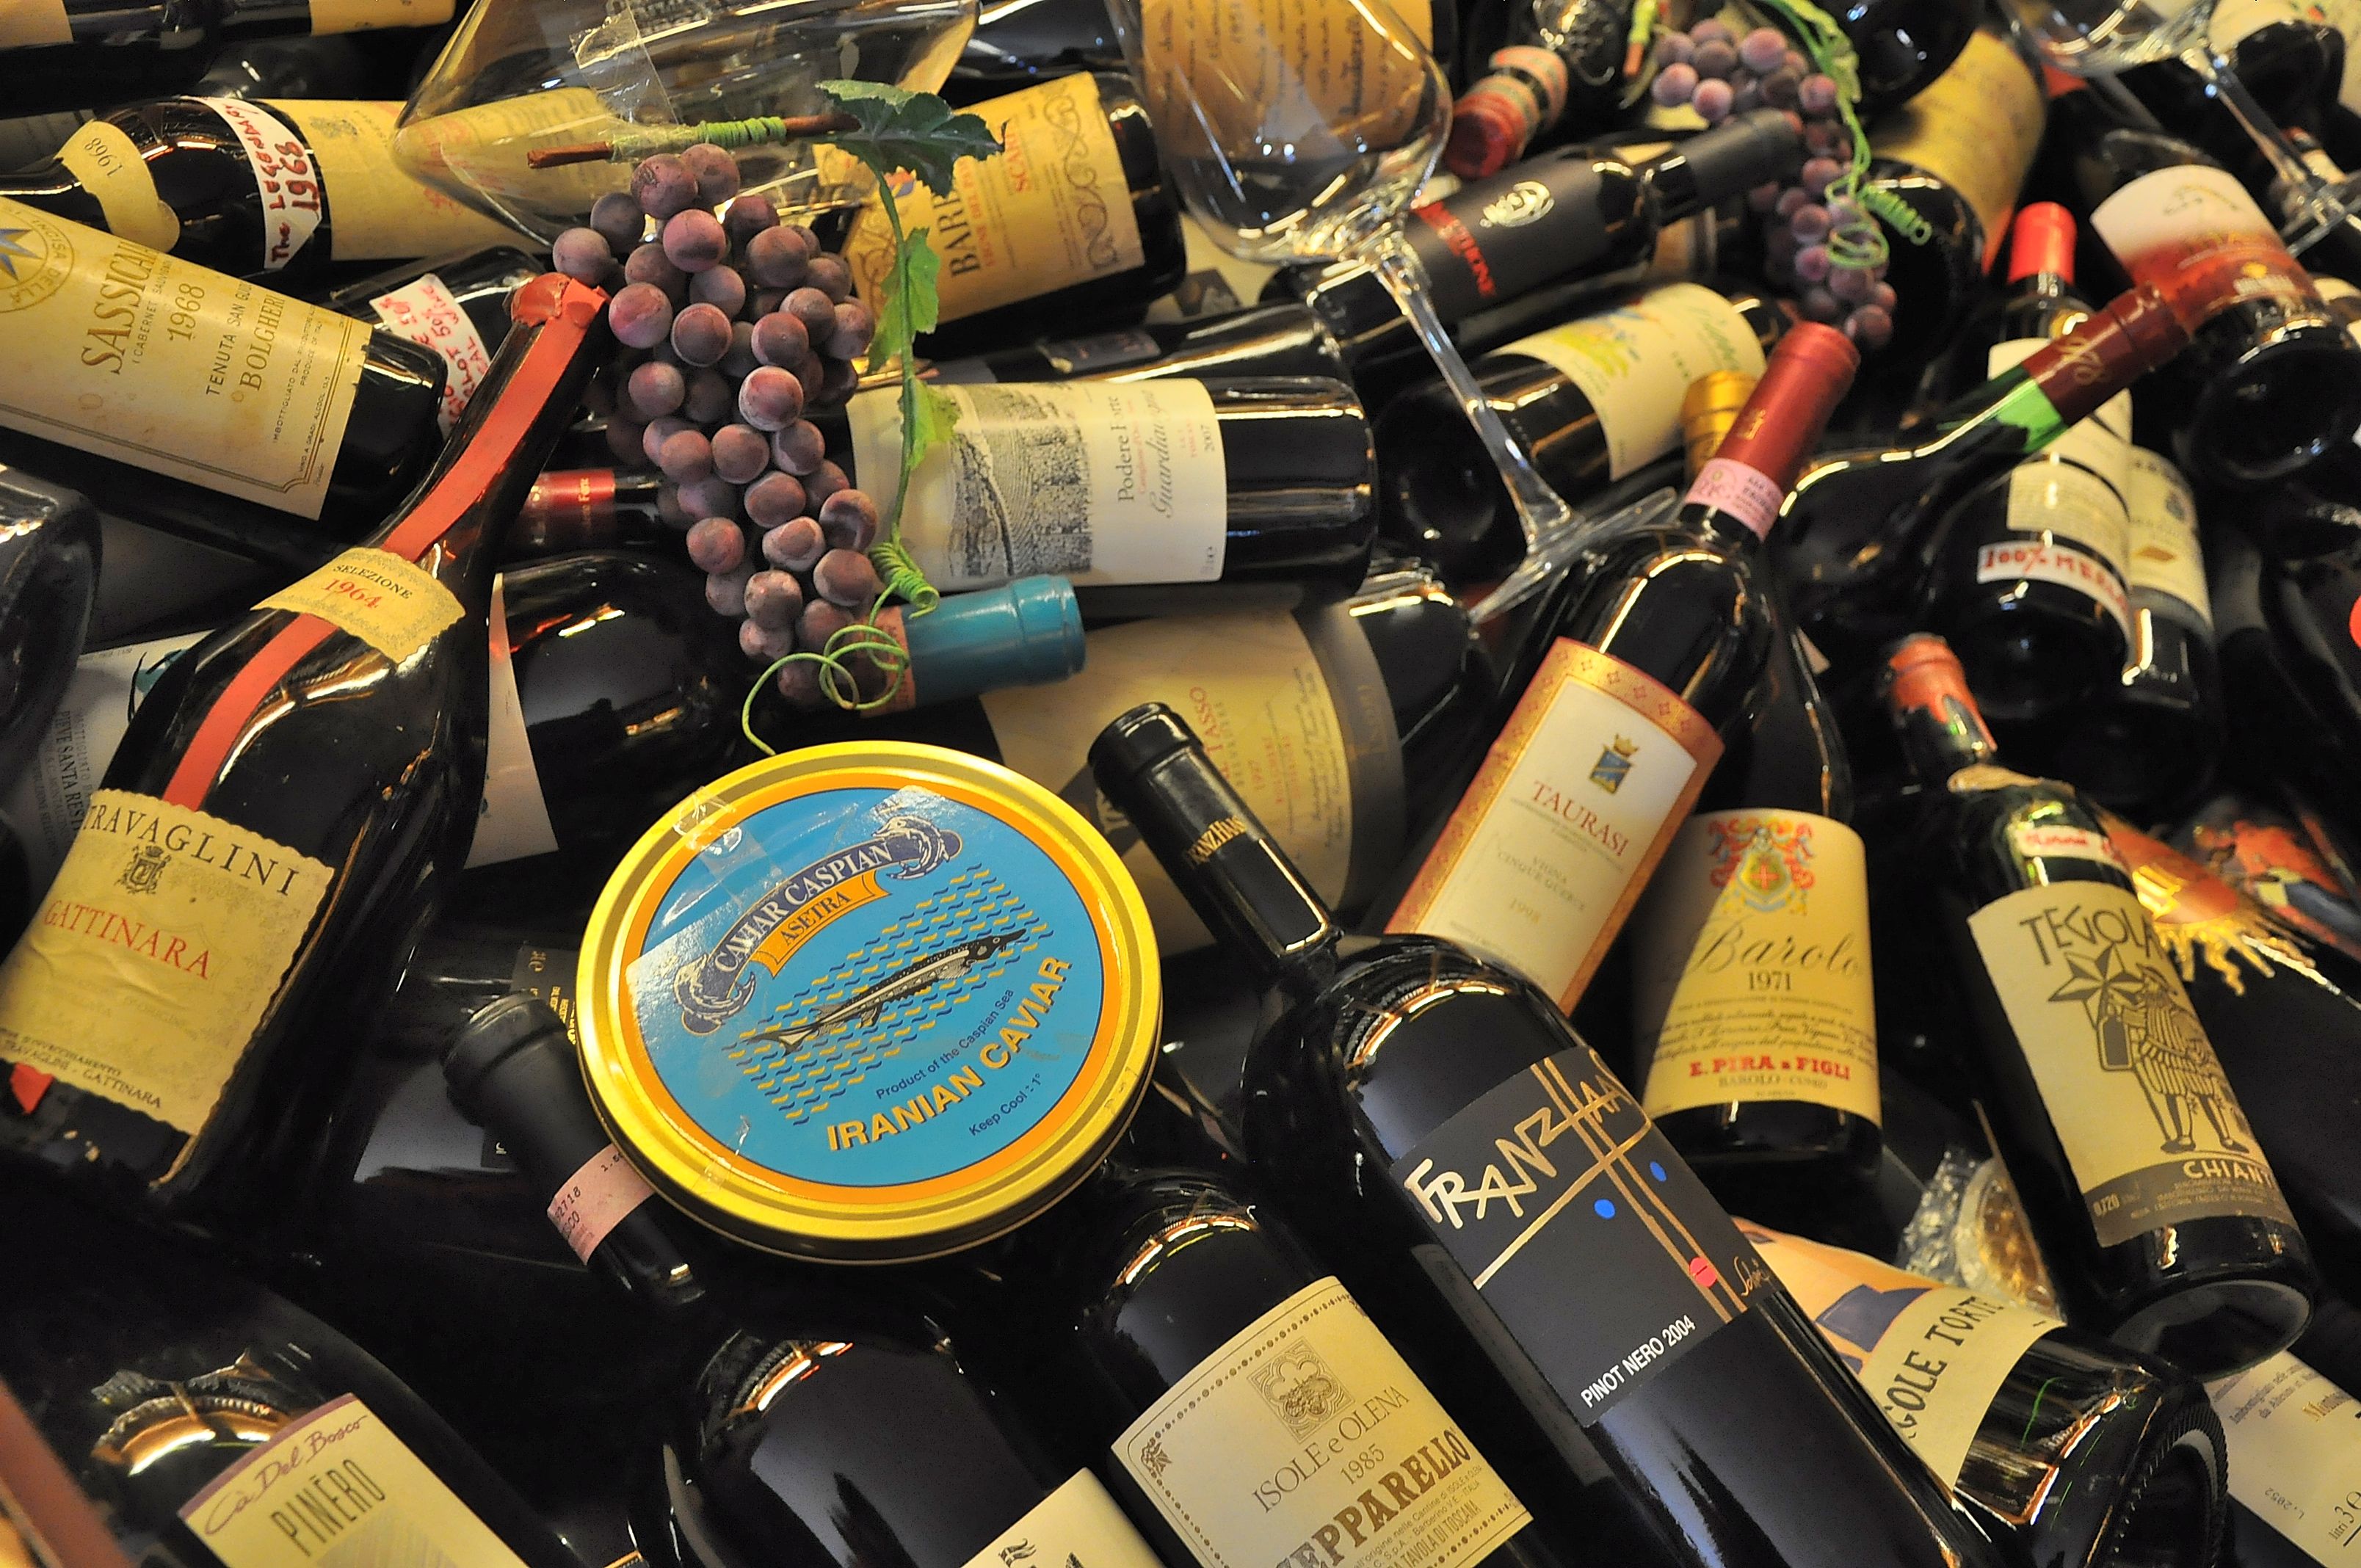 意大利葡萄酒生产协会|酒斛网 - 与数十万葡萄酒爱好者一起发现美酒，分享微醺的乐趣